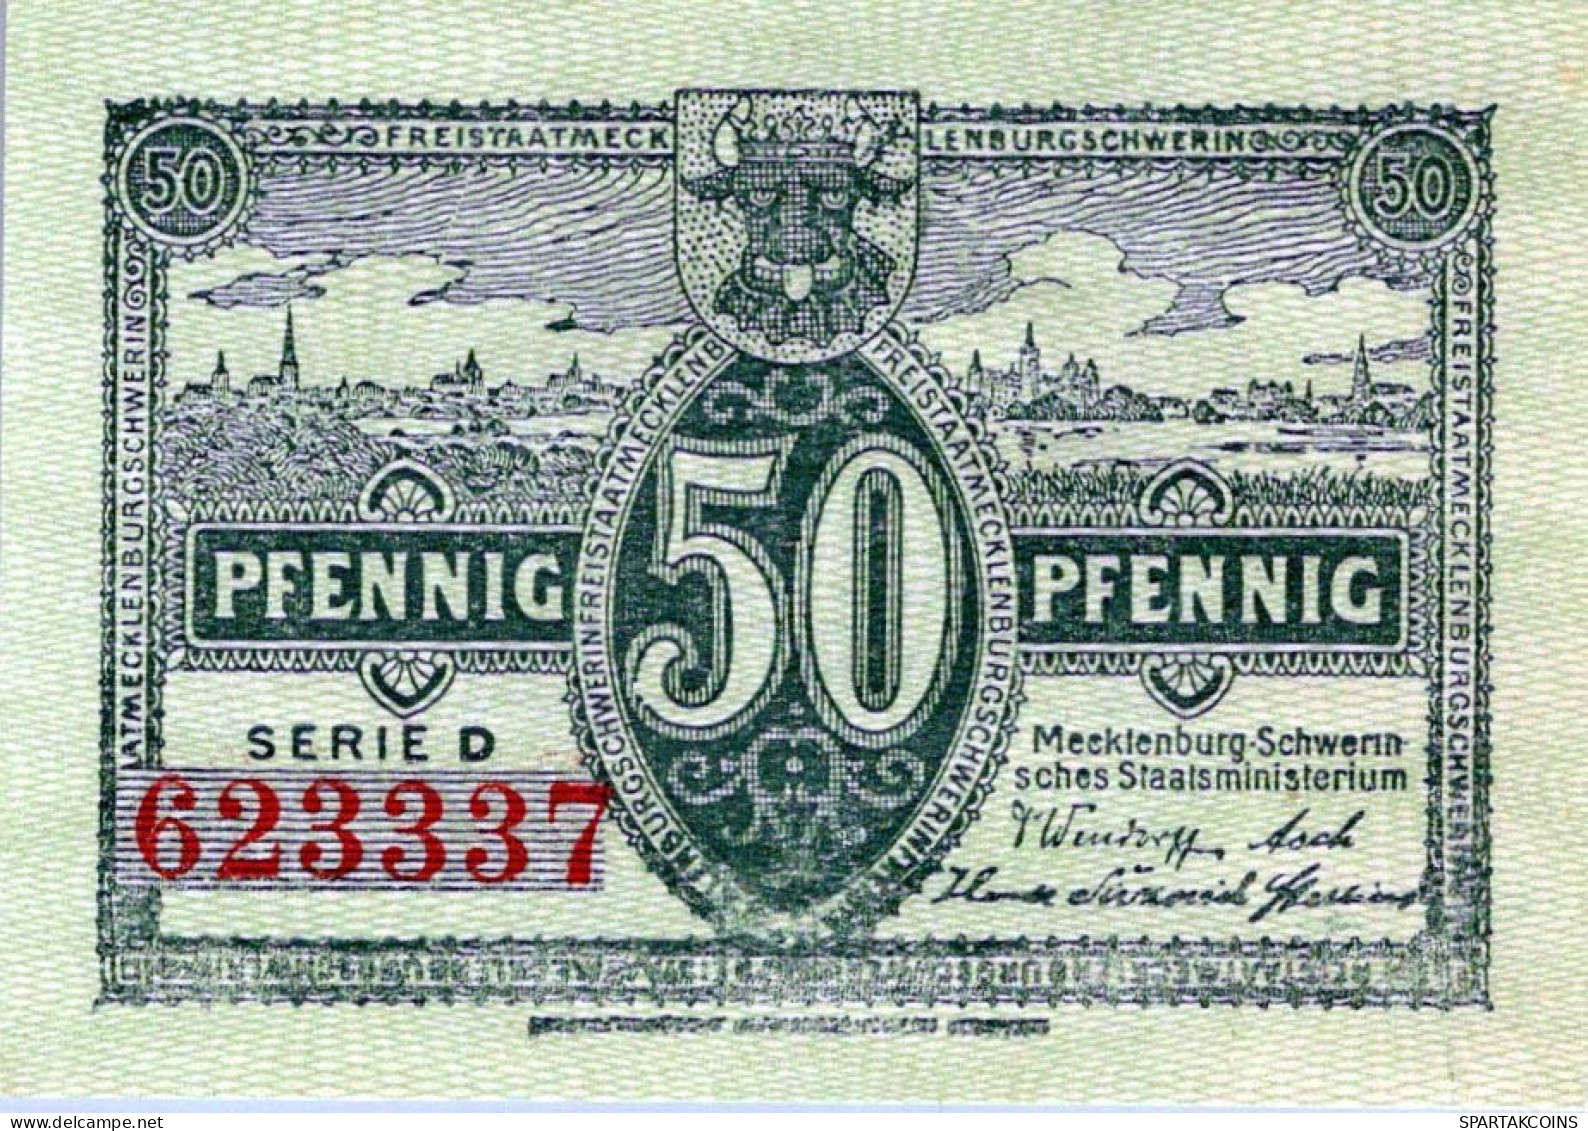 50 PFENNIG 1922 Stadt MECKLENBURG-SCHWERIN UNC DEUTSCHLAND #PH934 - [11] Local Banknote Issues